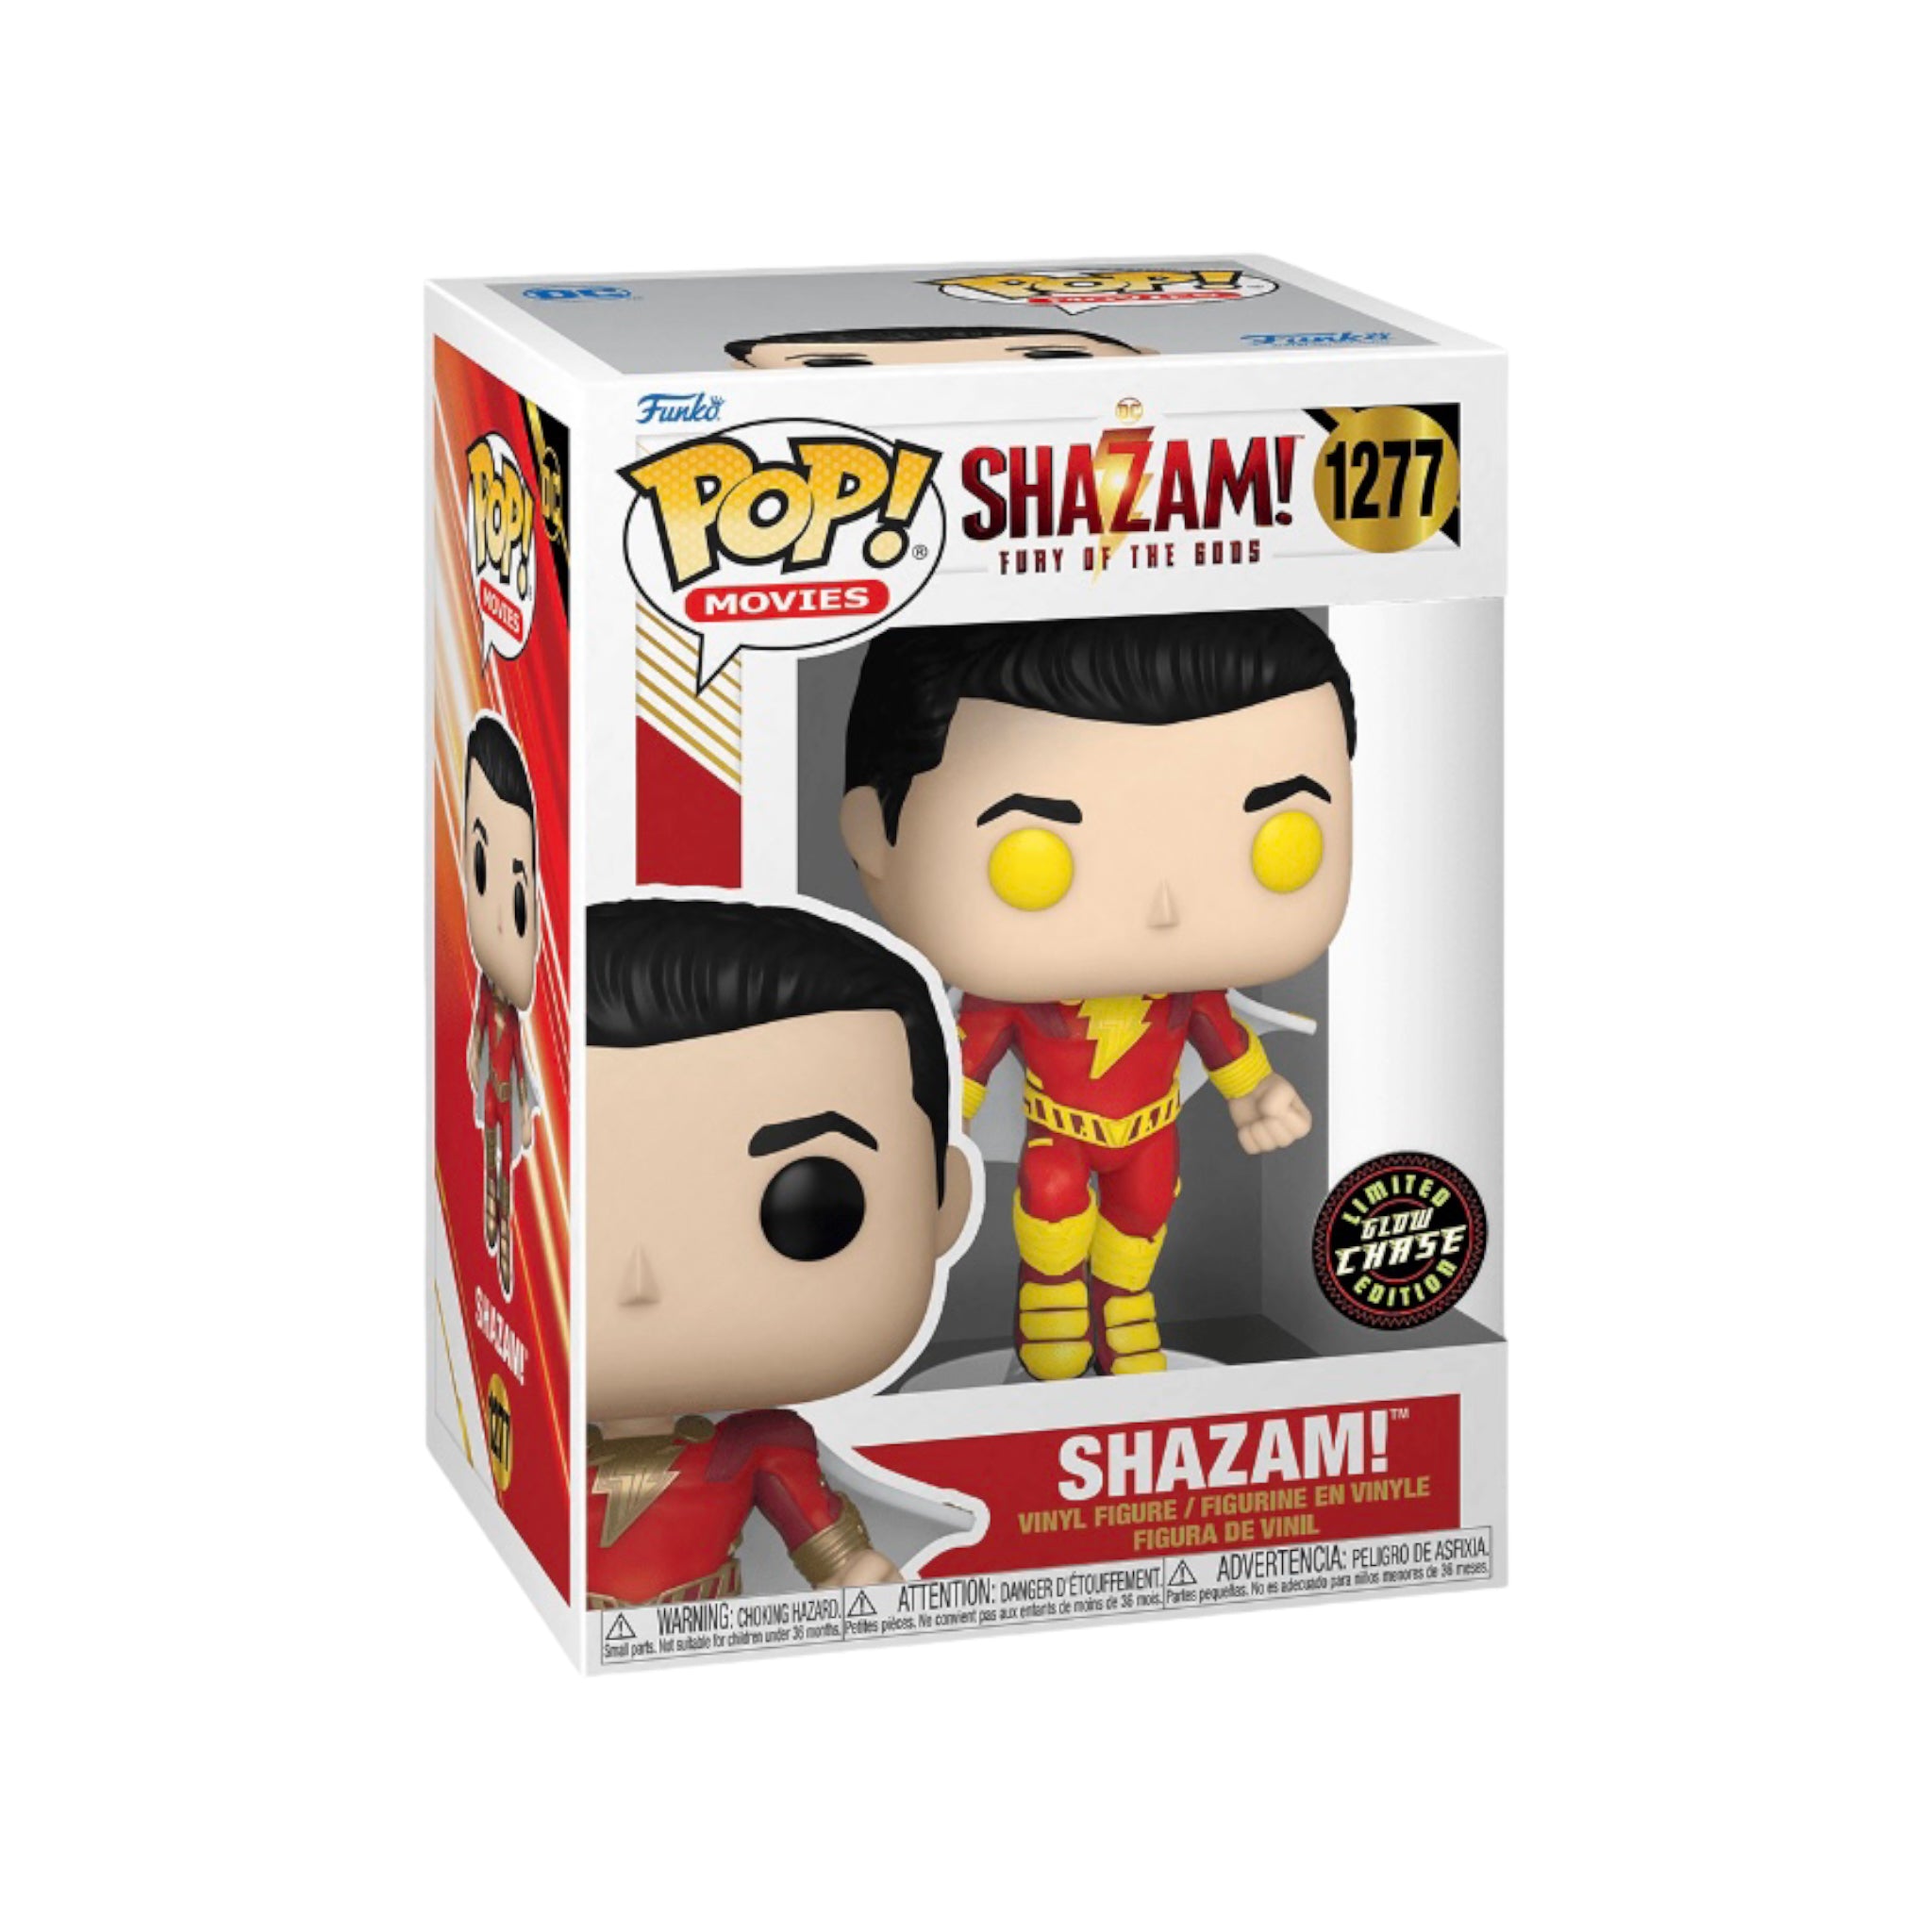 Shazam! #1277 (Glow Chase) Funko Pop! - Shazam!: Fury of The Gods